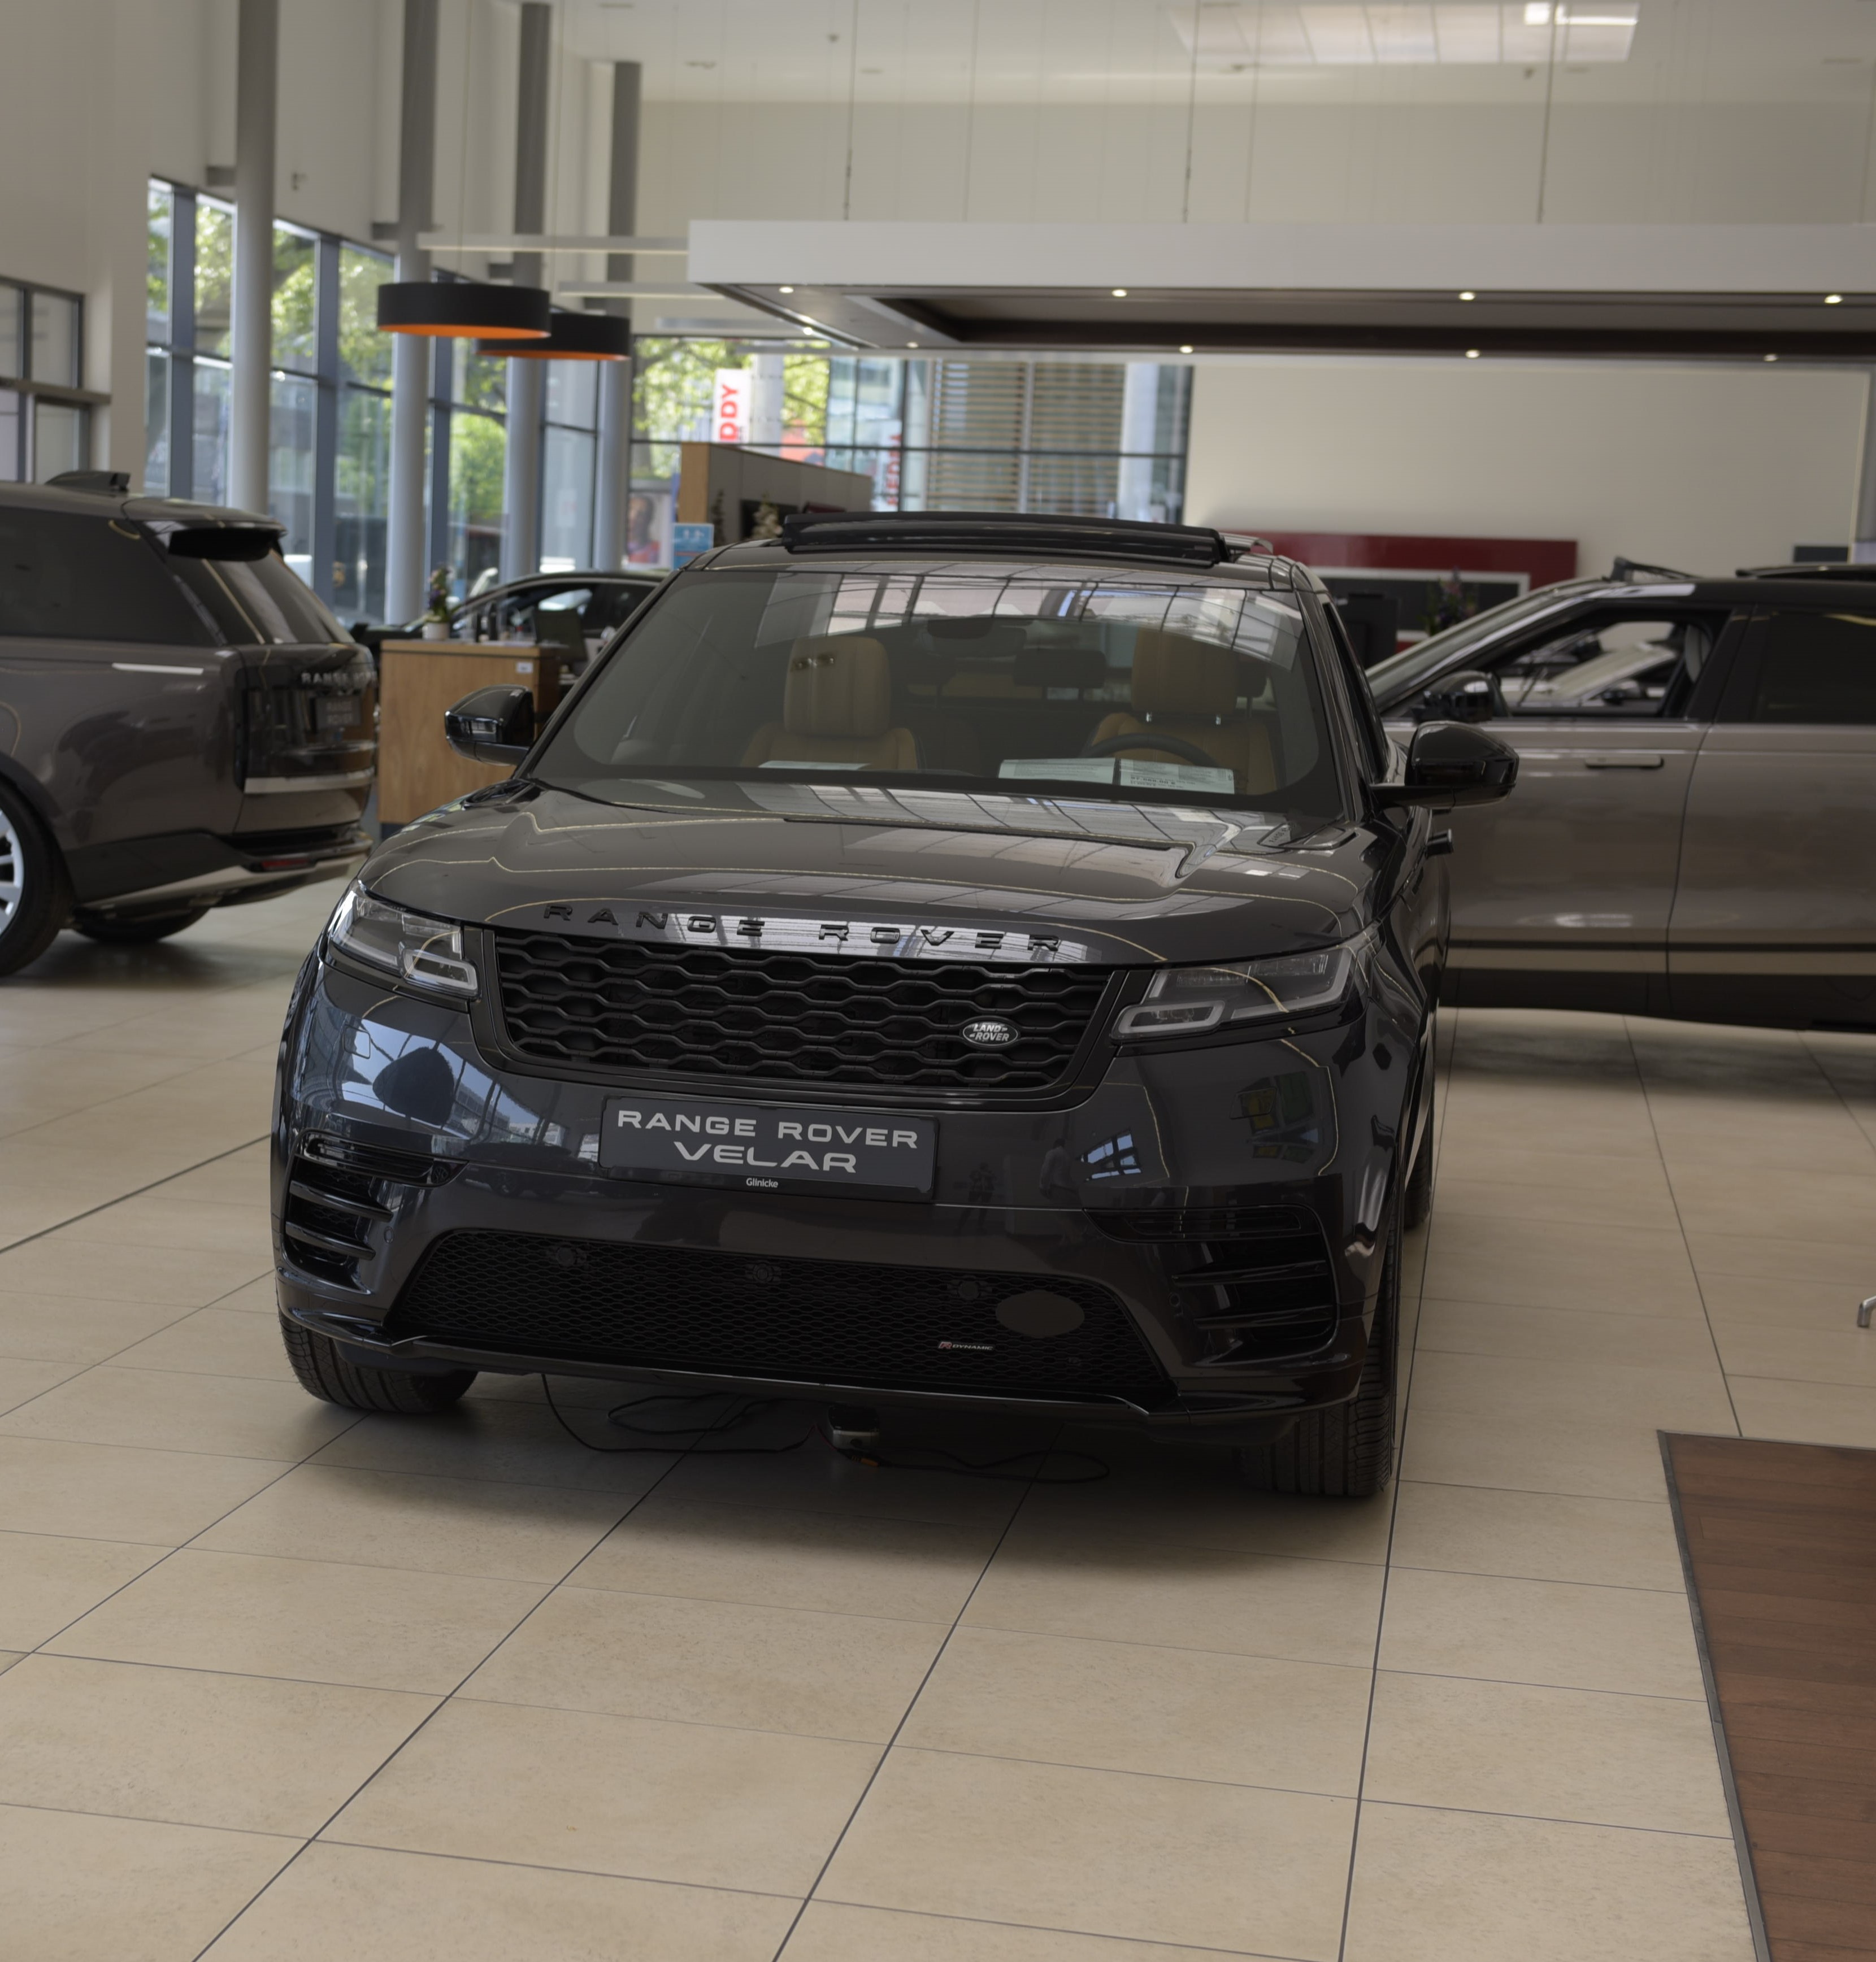 Bild 7 Land Rover Range Rover Autohaus | Glinicke | British Cars in Frankfurt am Main